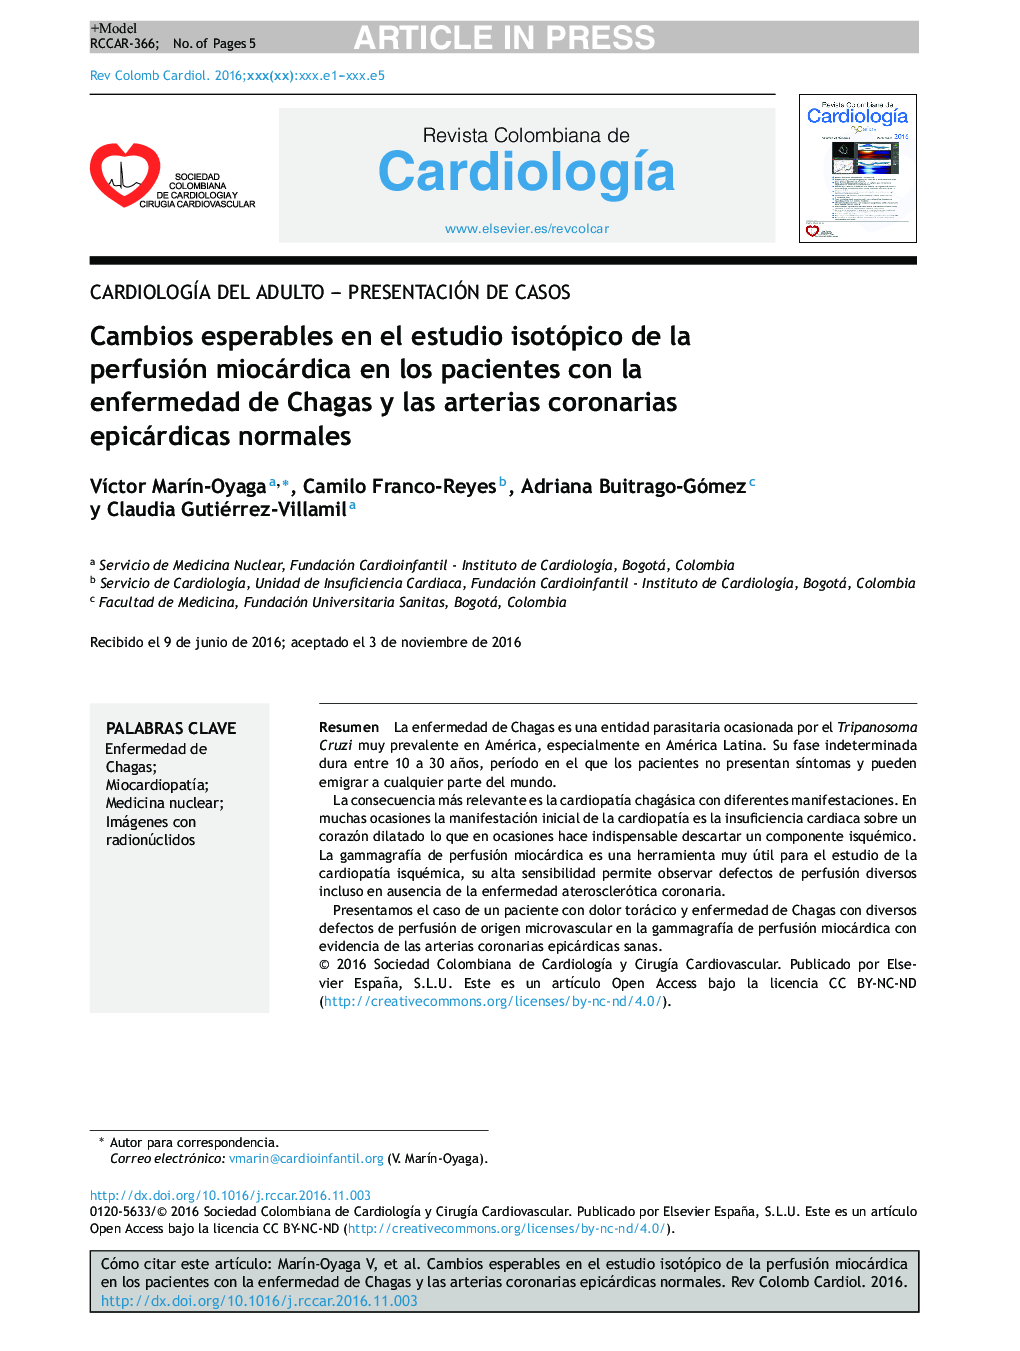 Cambios esperables en el estudio isotópico de la perfusión miocárdica en los pacientes con enfermedad de Chagas y arterias coronarias epicárdicas normales